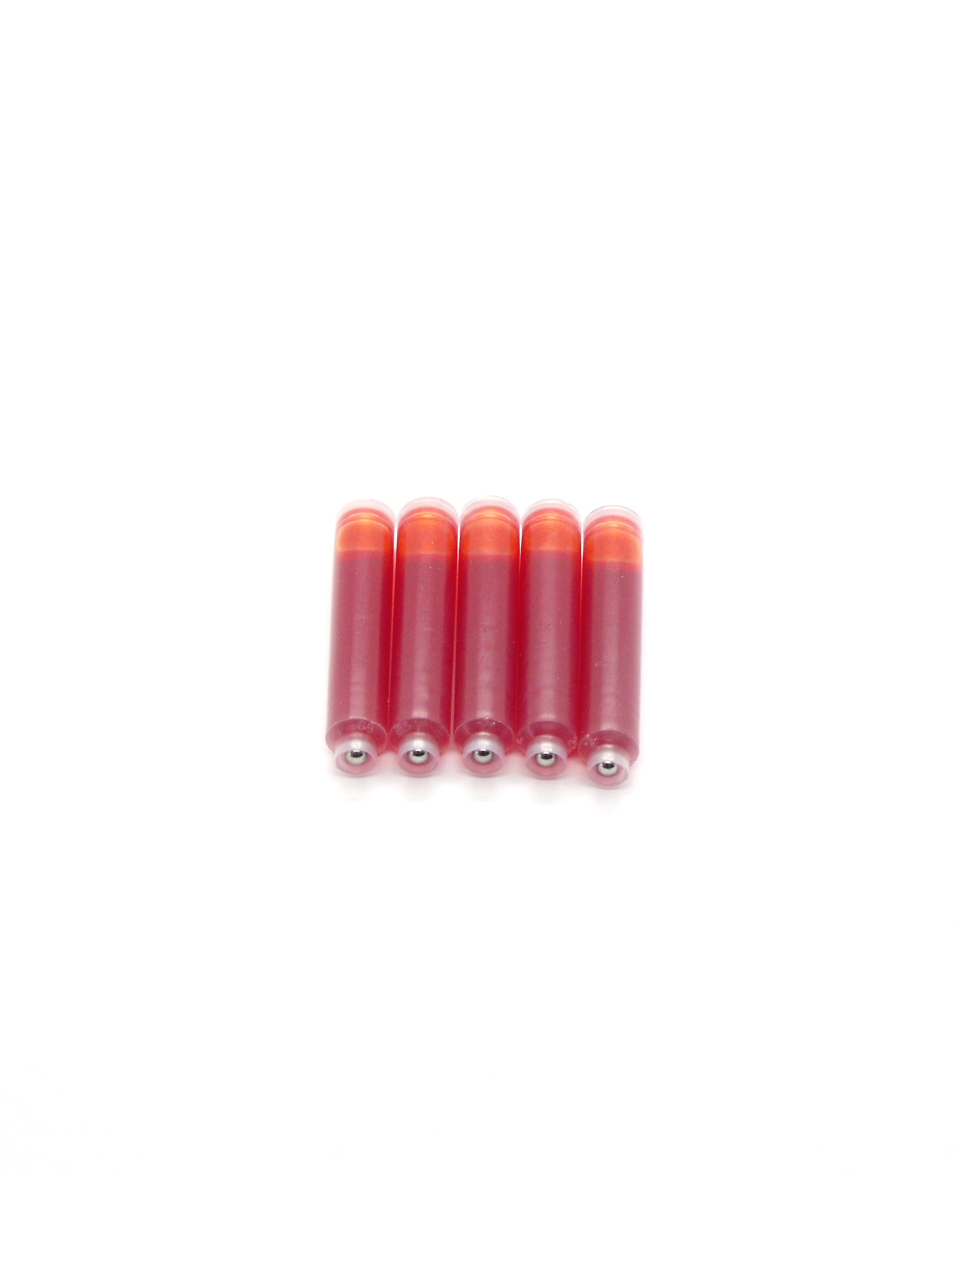 Top Ink Cartridges For Pelikan Fountain Pens (Orange)